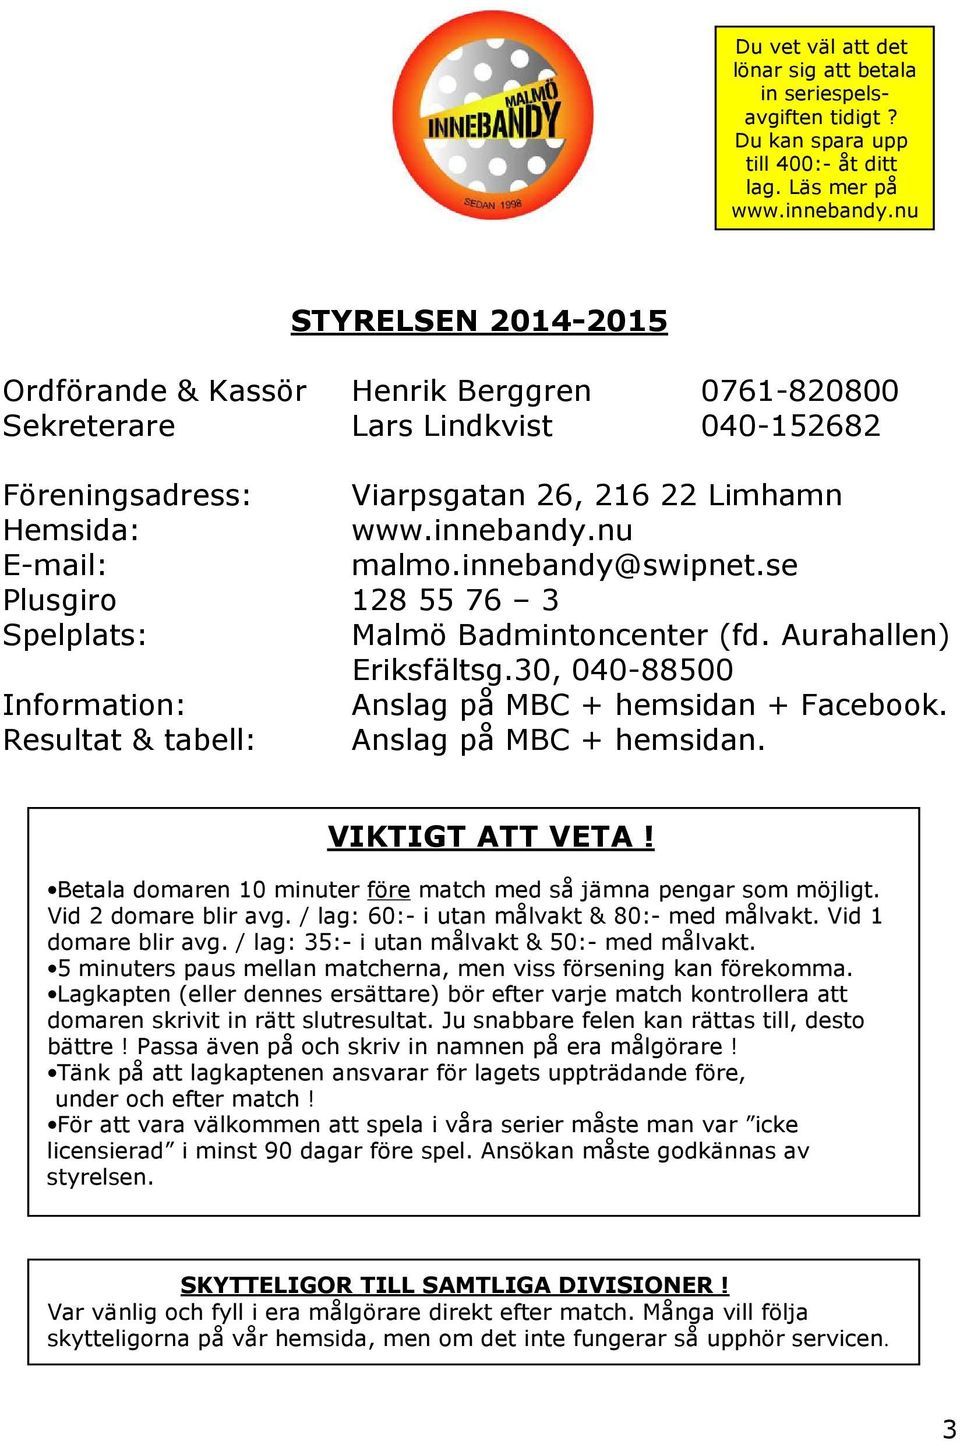 innebandy@swipnet.se Plusgiro 128 55 76 3 Spelplats: Malmö Badmintoncenter (fd. Aurahallen) Eriksfältsg.30, 040-88500 Information: Anslag på MBC + hemsidan + Facebook.